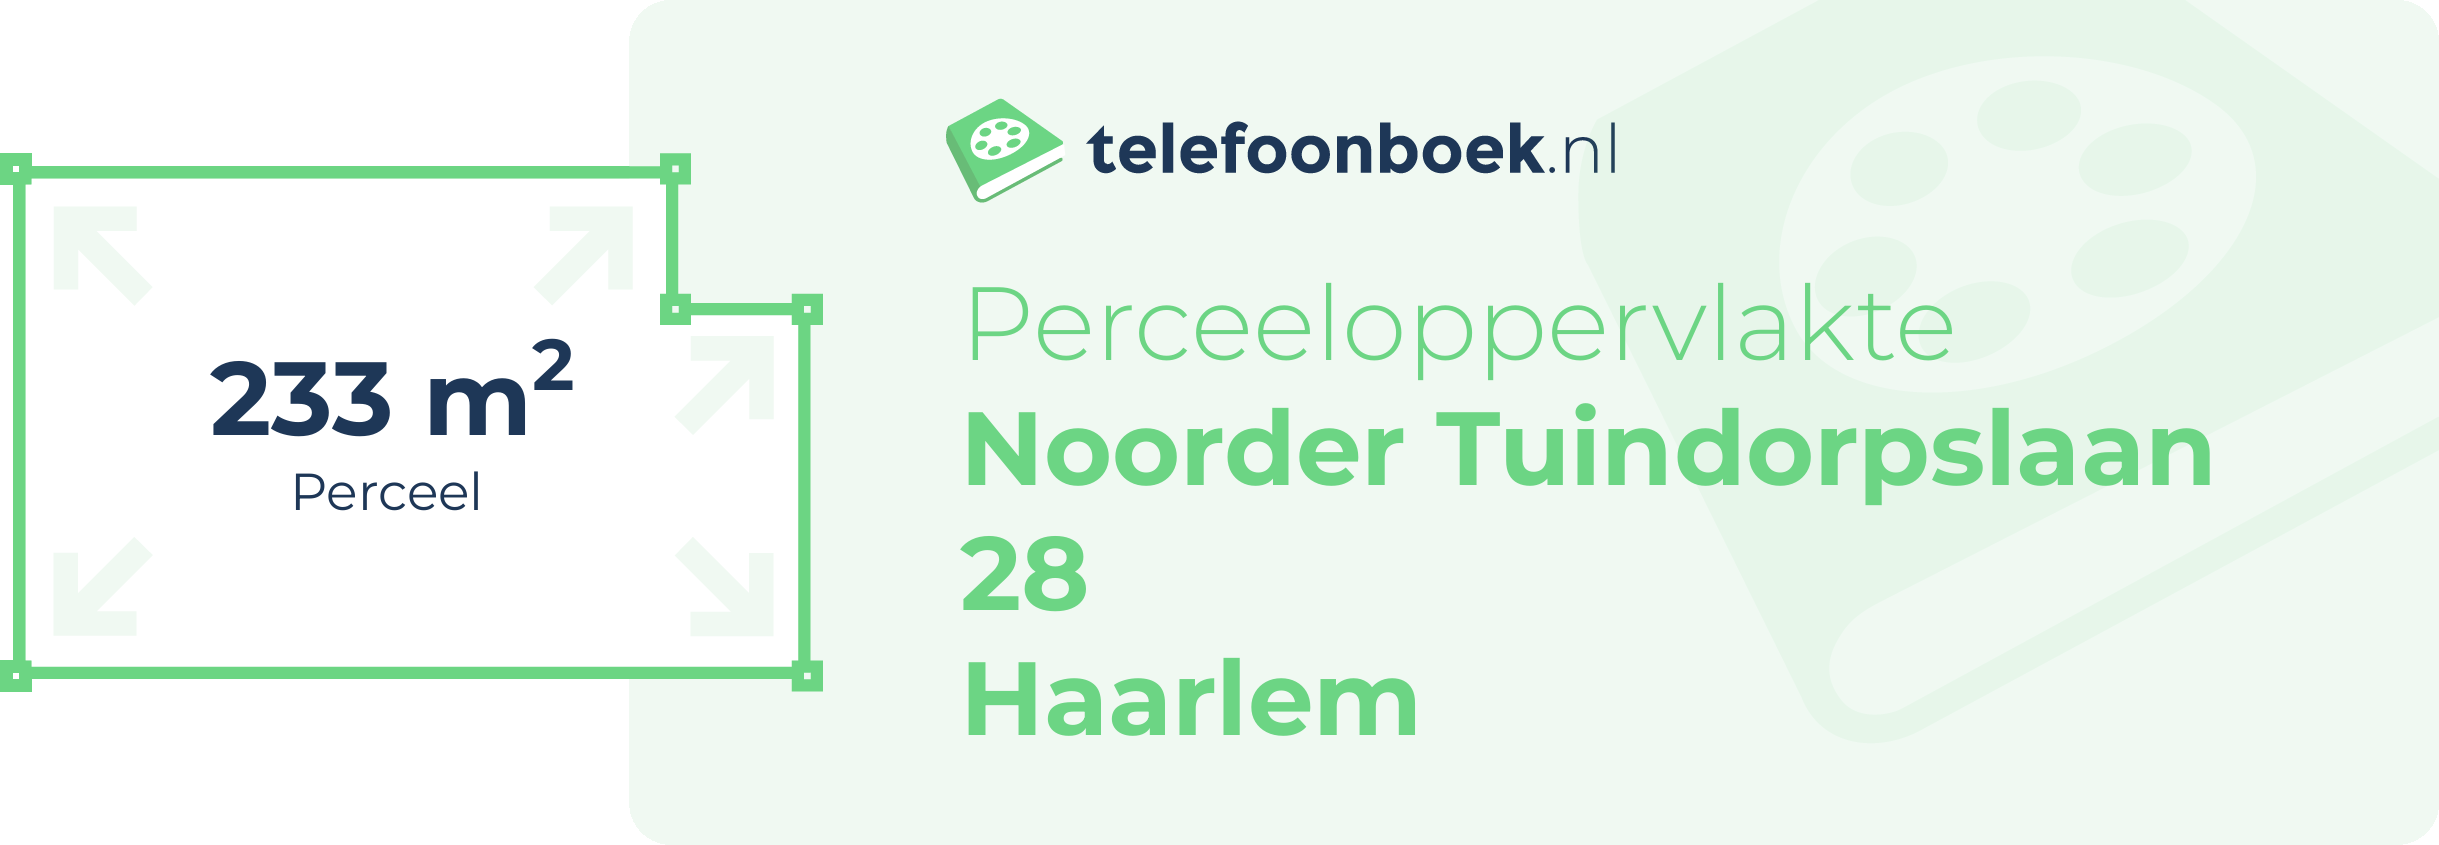 Perceeloppervlakte Noorder Tuindorpslaan 28 Haarlem